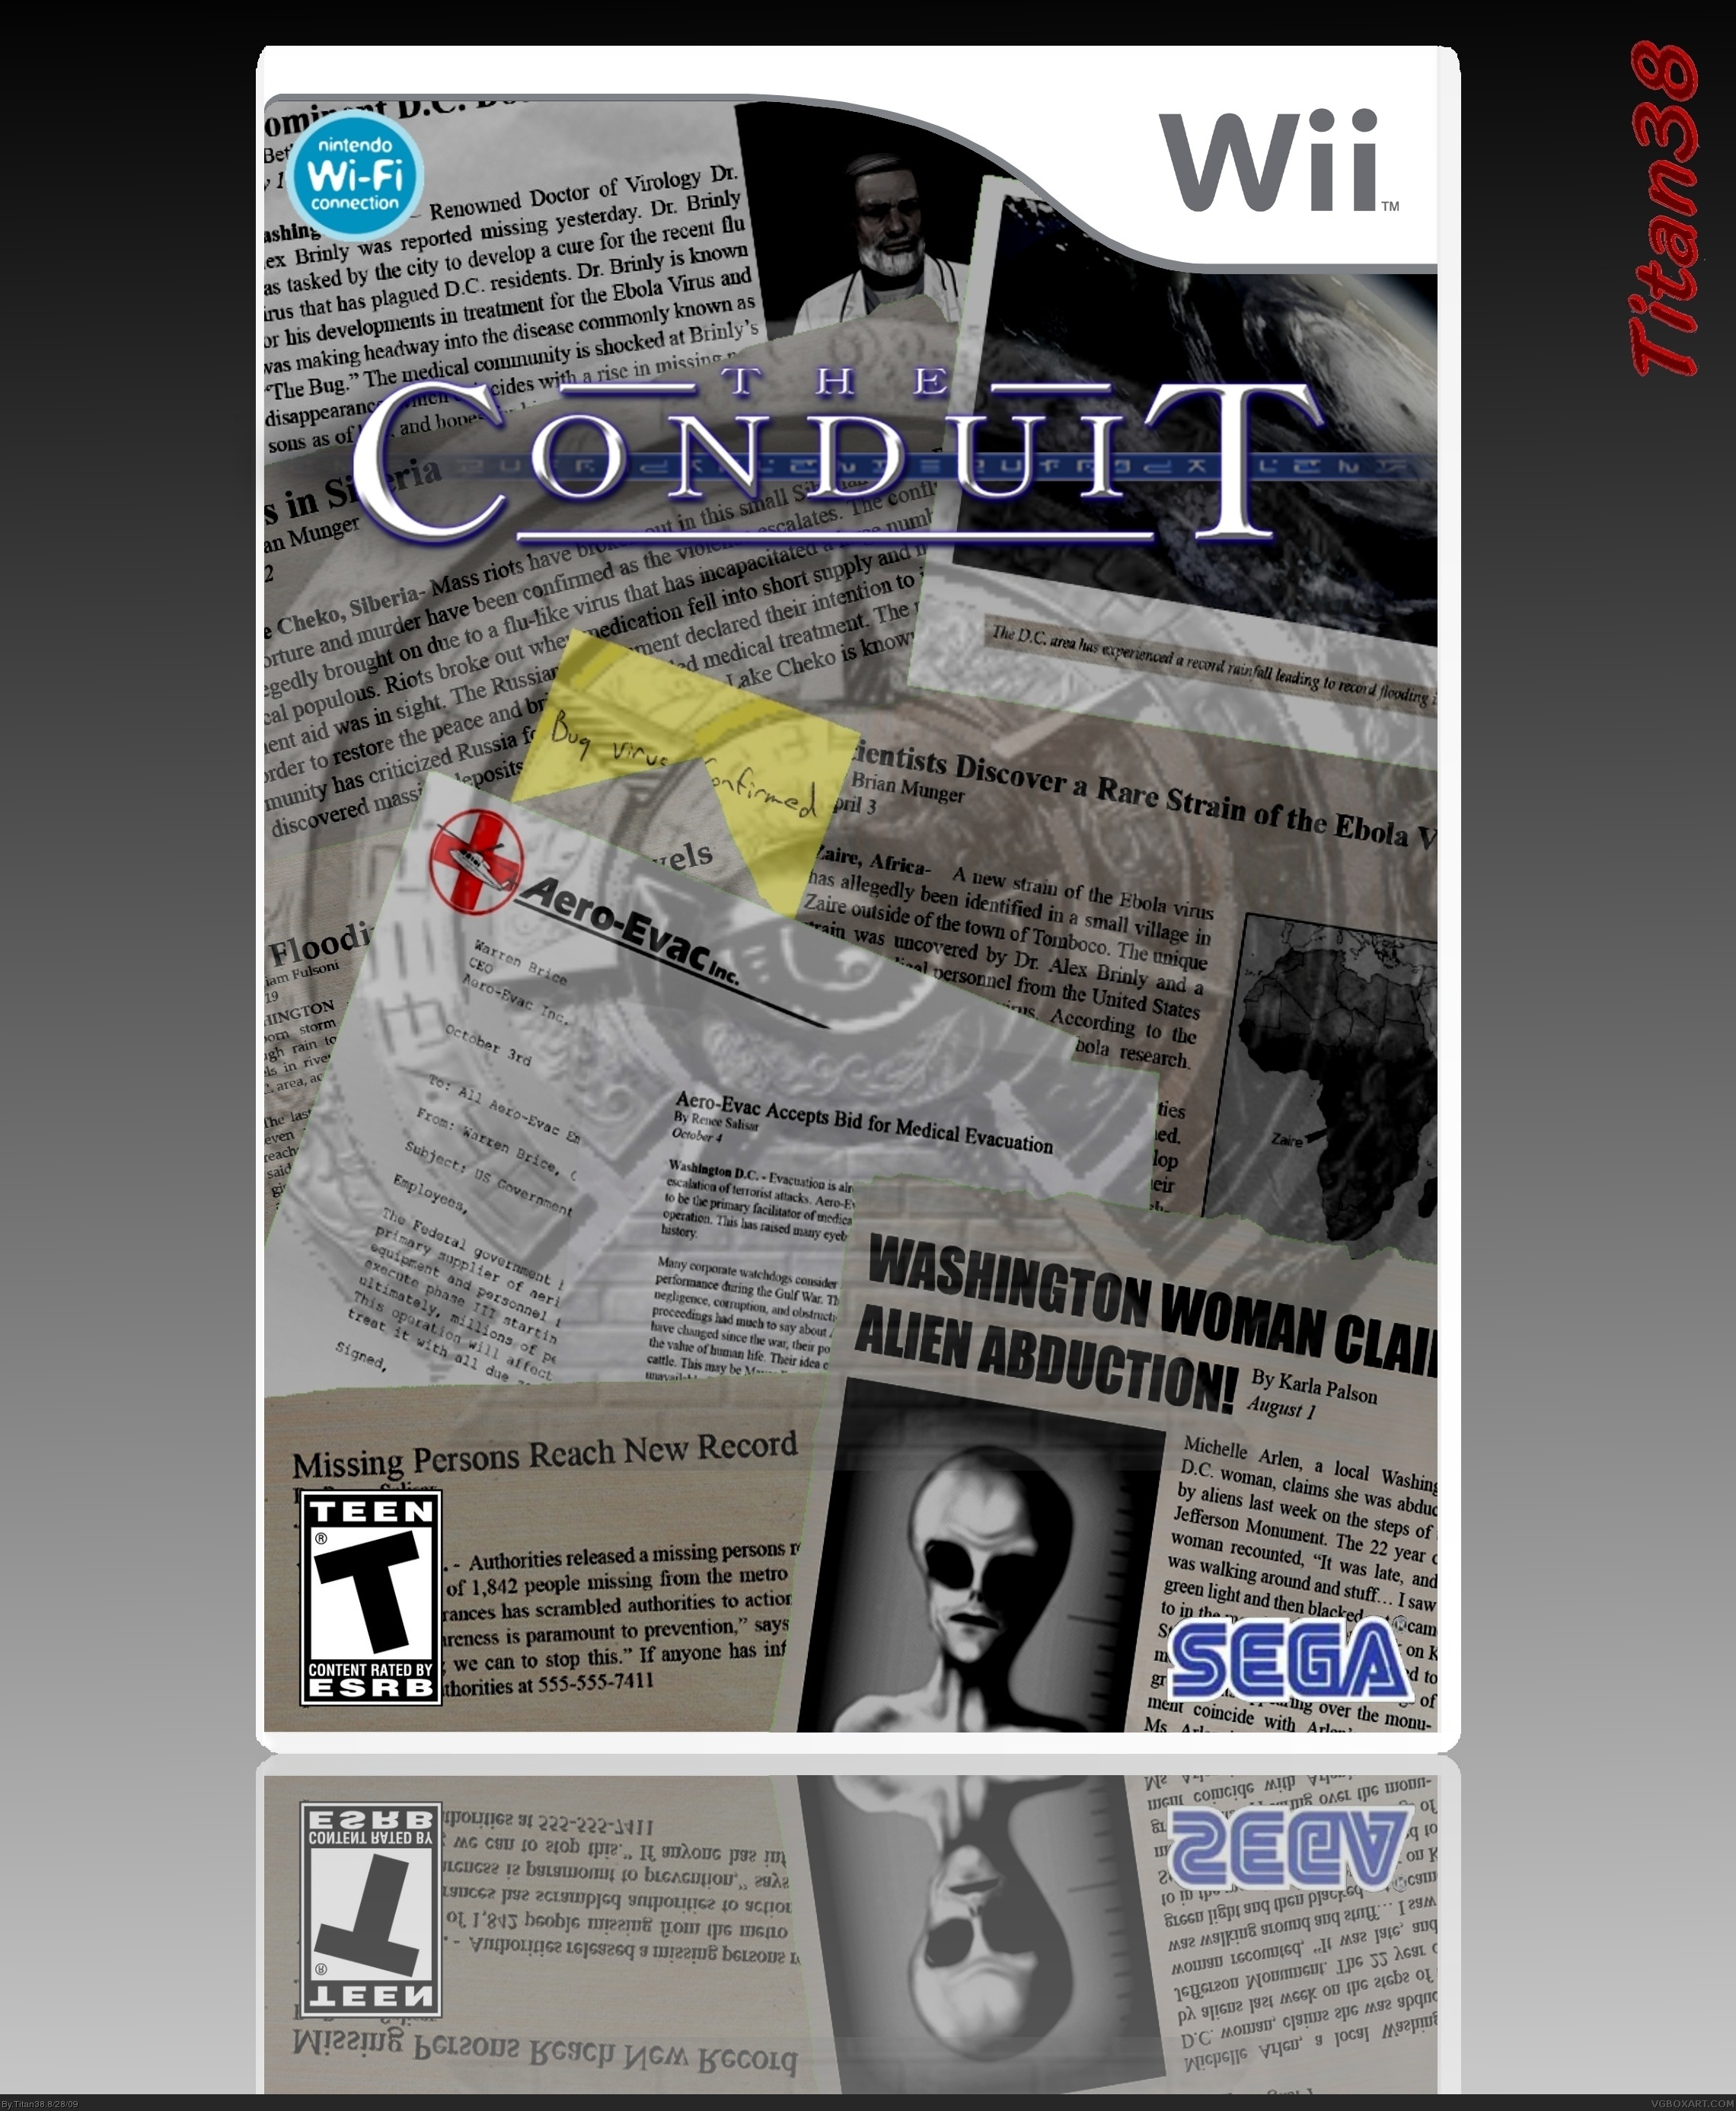 The Conduit box cover